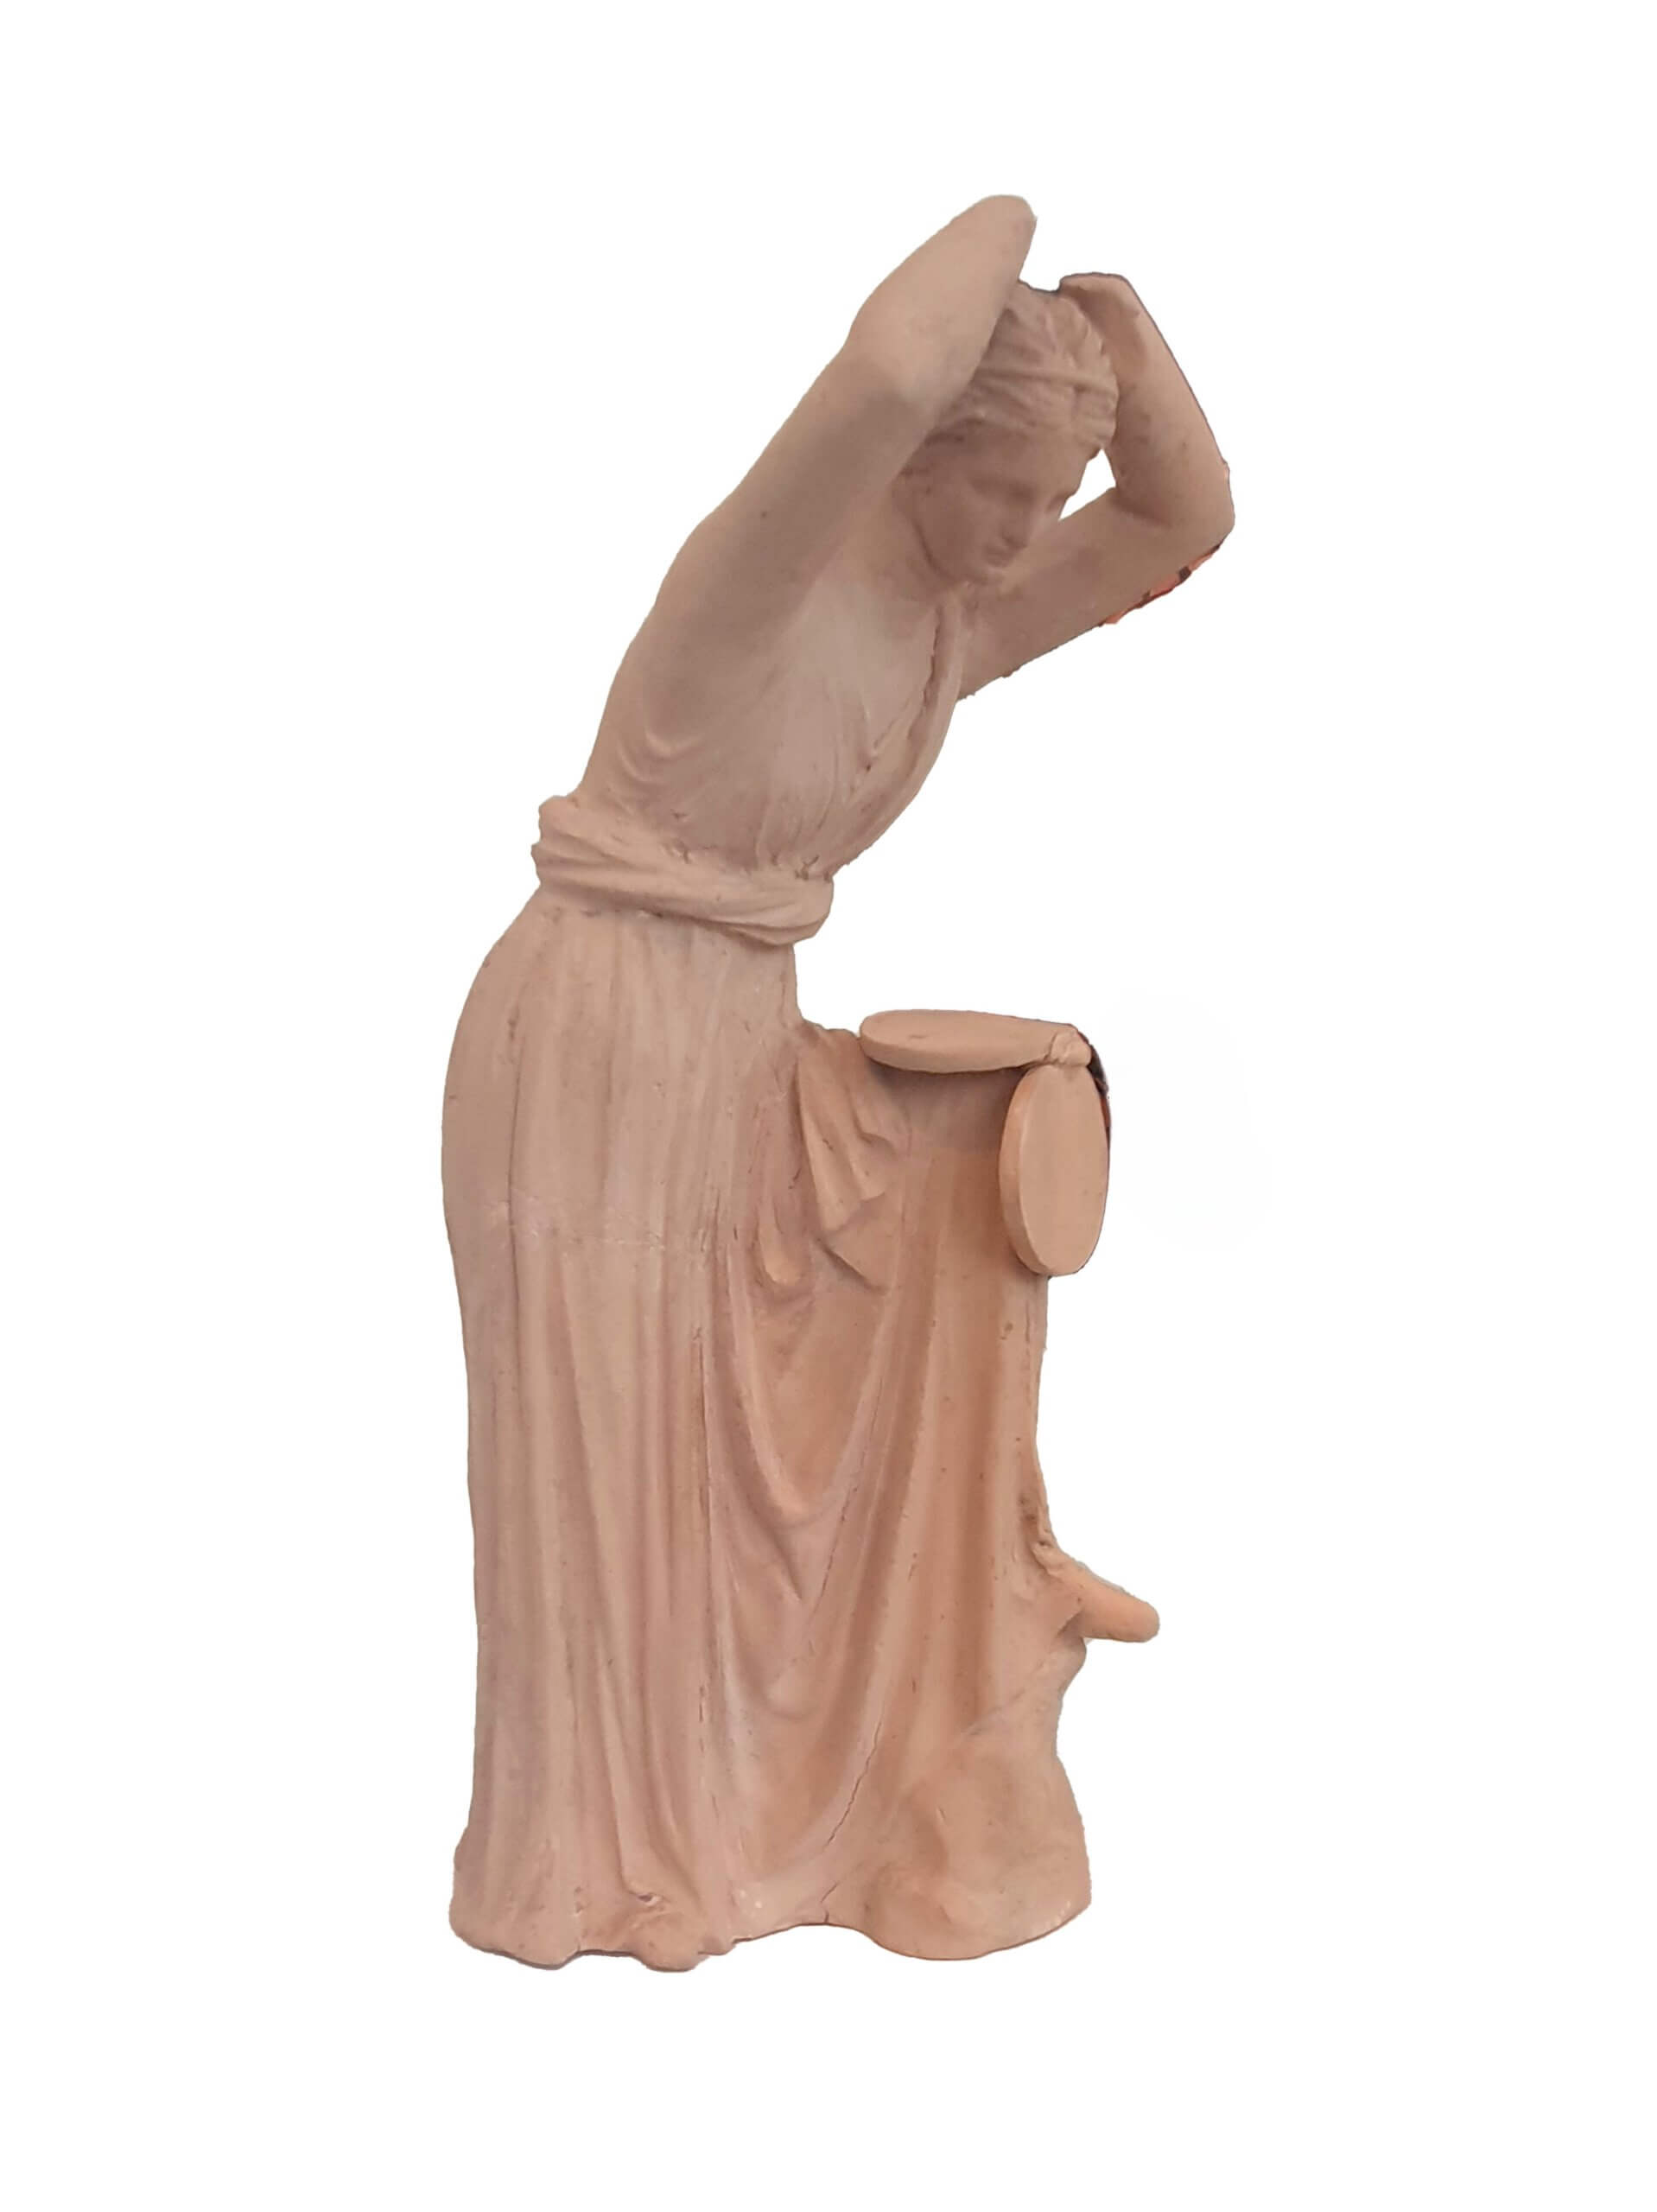 צלמית הלניסטית של אישה המתבוננת במראה מתקפלת. צולמה המוזיאון המטרופוליטן בניו יורק. צילום ליאת עוז רשות העתיקות